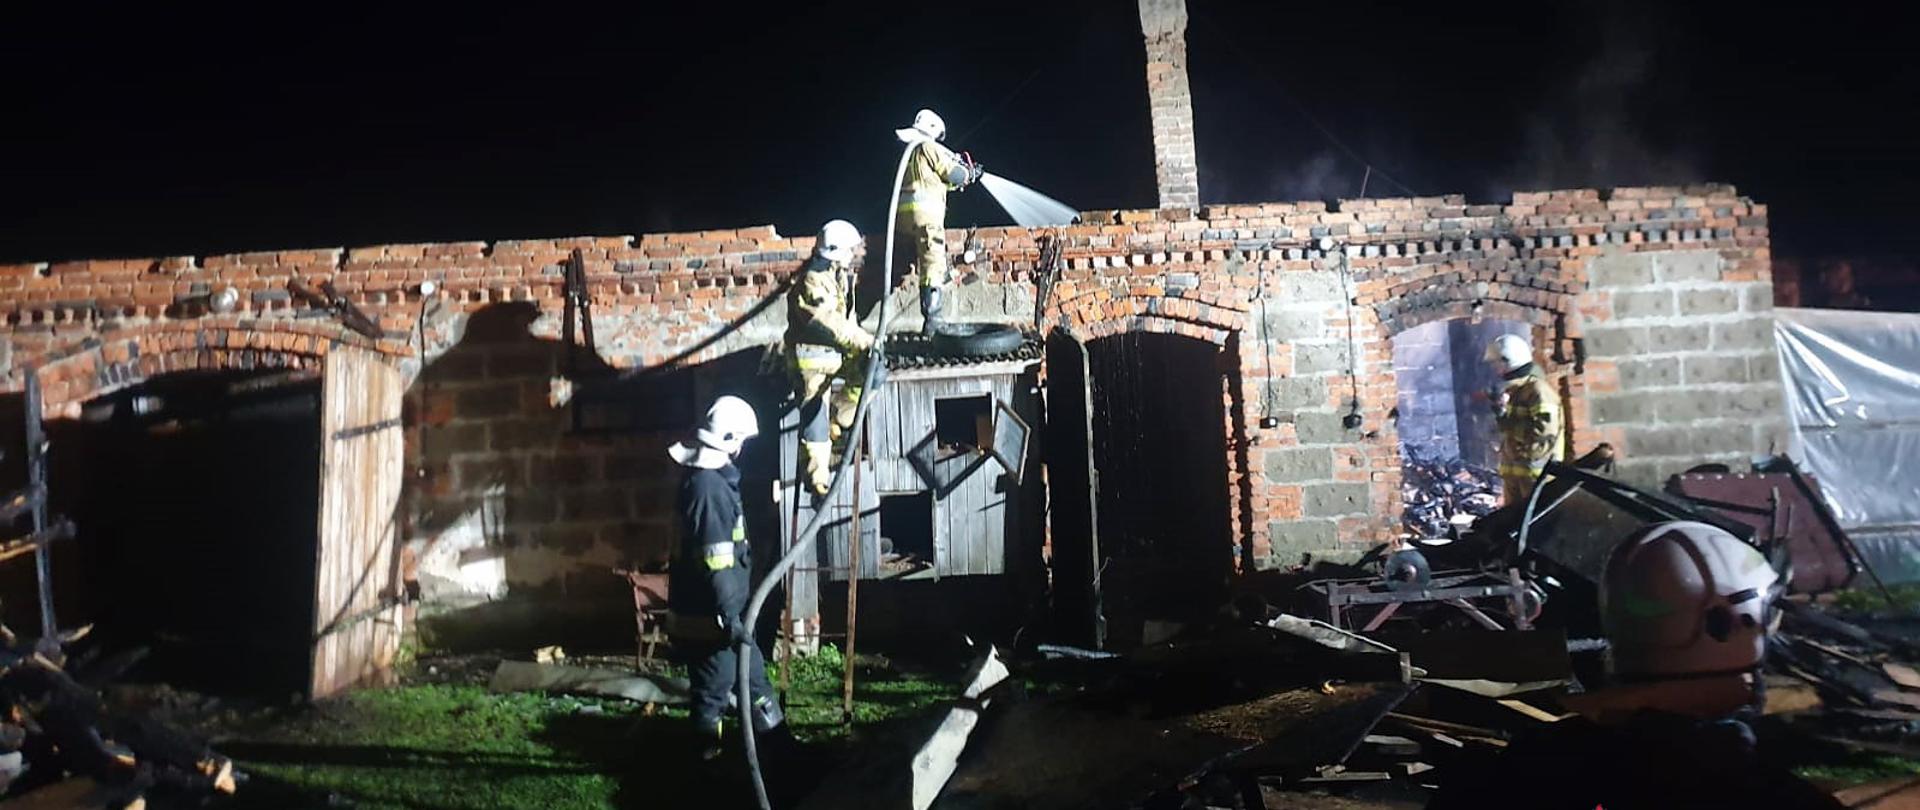 Pożar budynku gospodarczego w miejscowości Ulatowo-Czerniaki